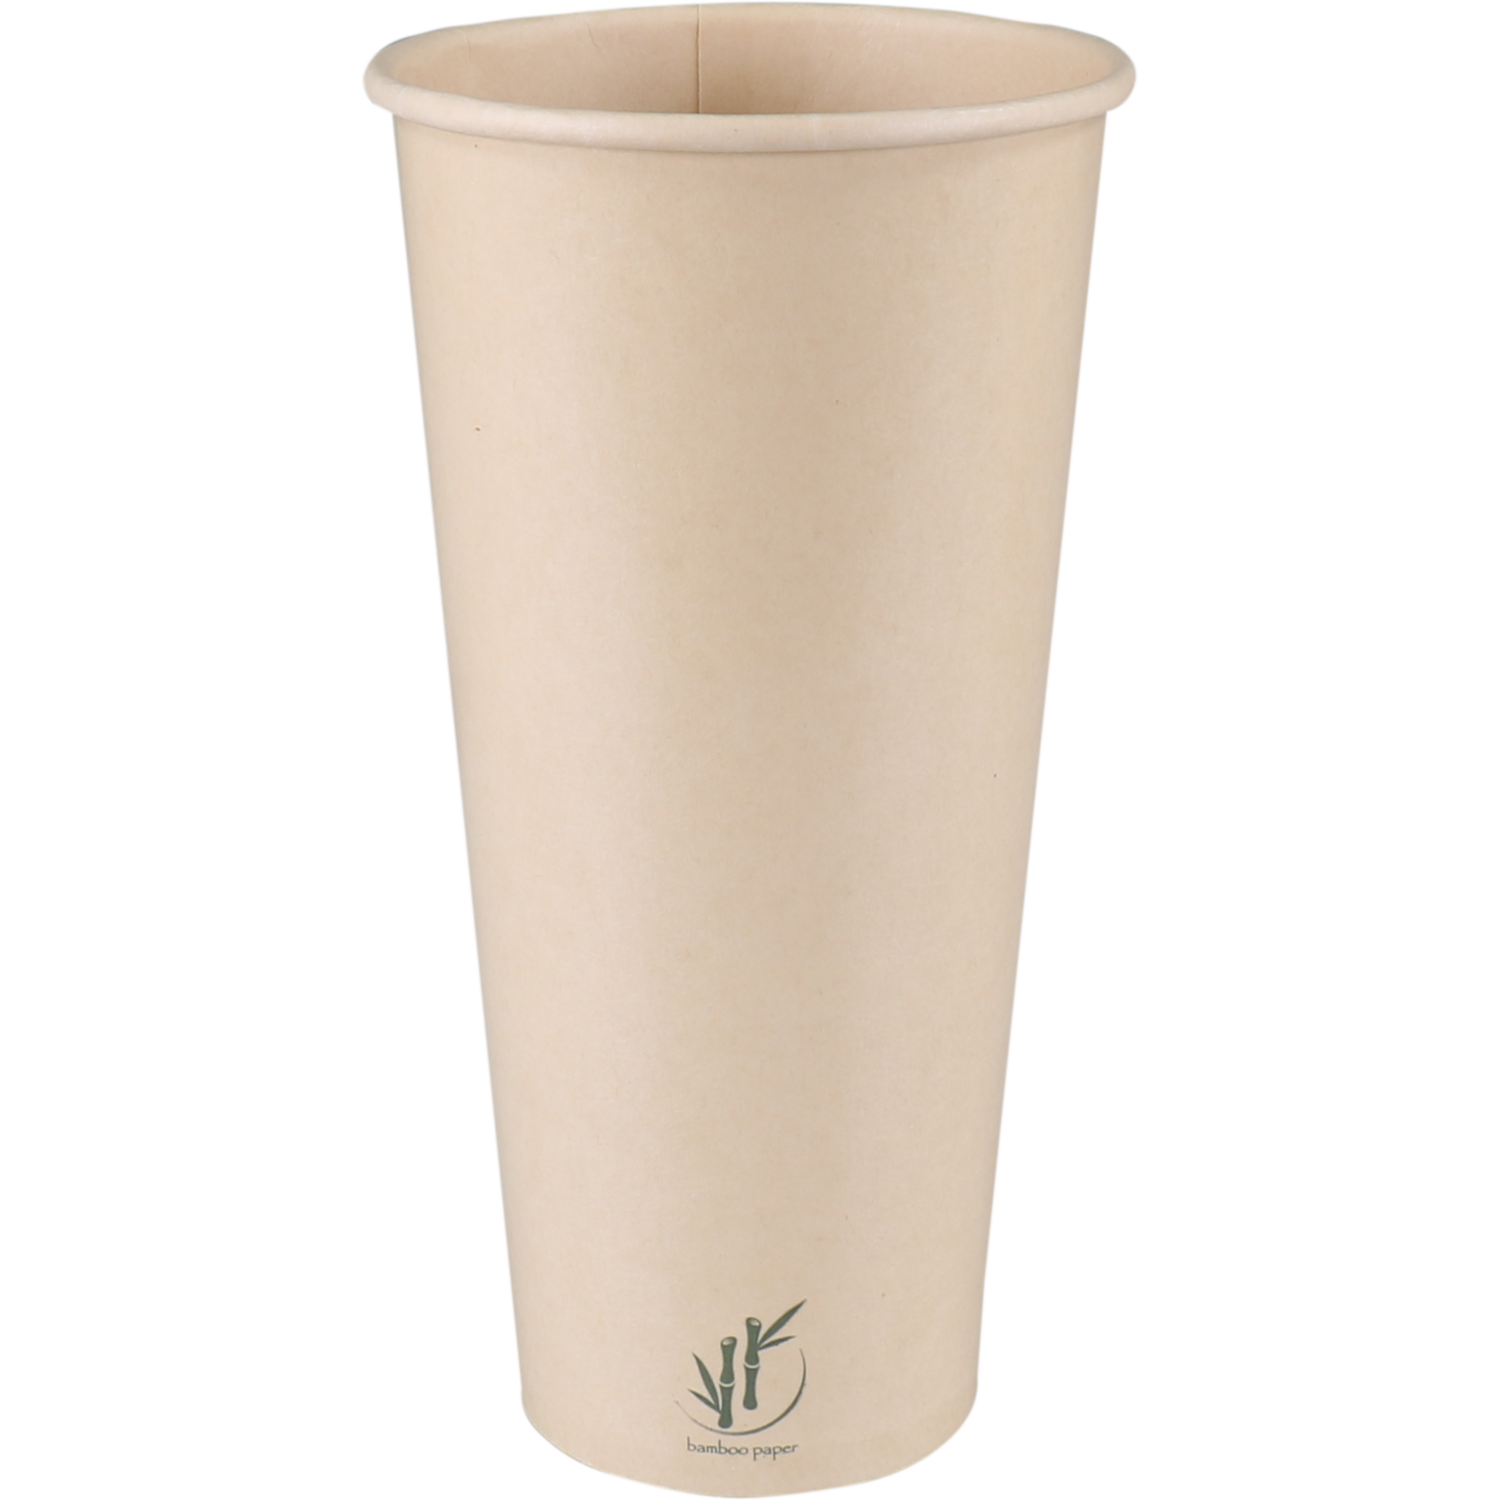 Depa®, Milkshake cup, Cardboard + PE, 500ml,  1